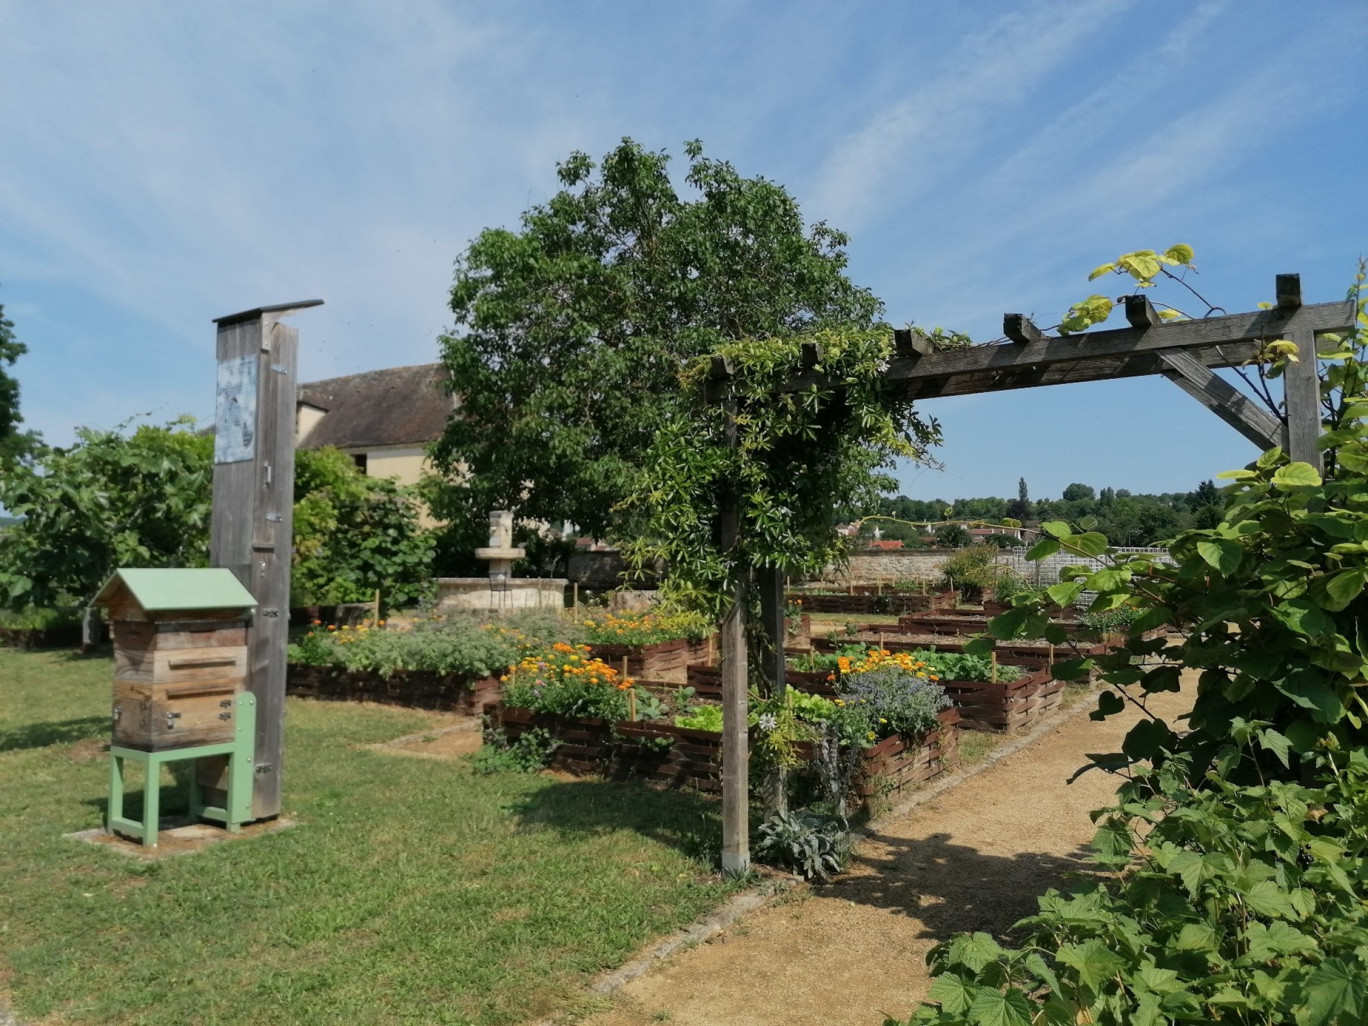 Le Jardin accueille également des colonies d’abeilles qui butinent librement les fleurs du jardin. ©Maison du Tourisme les Portes de la Champagne